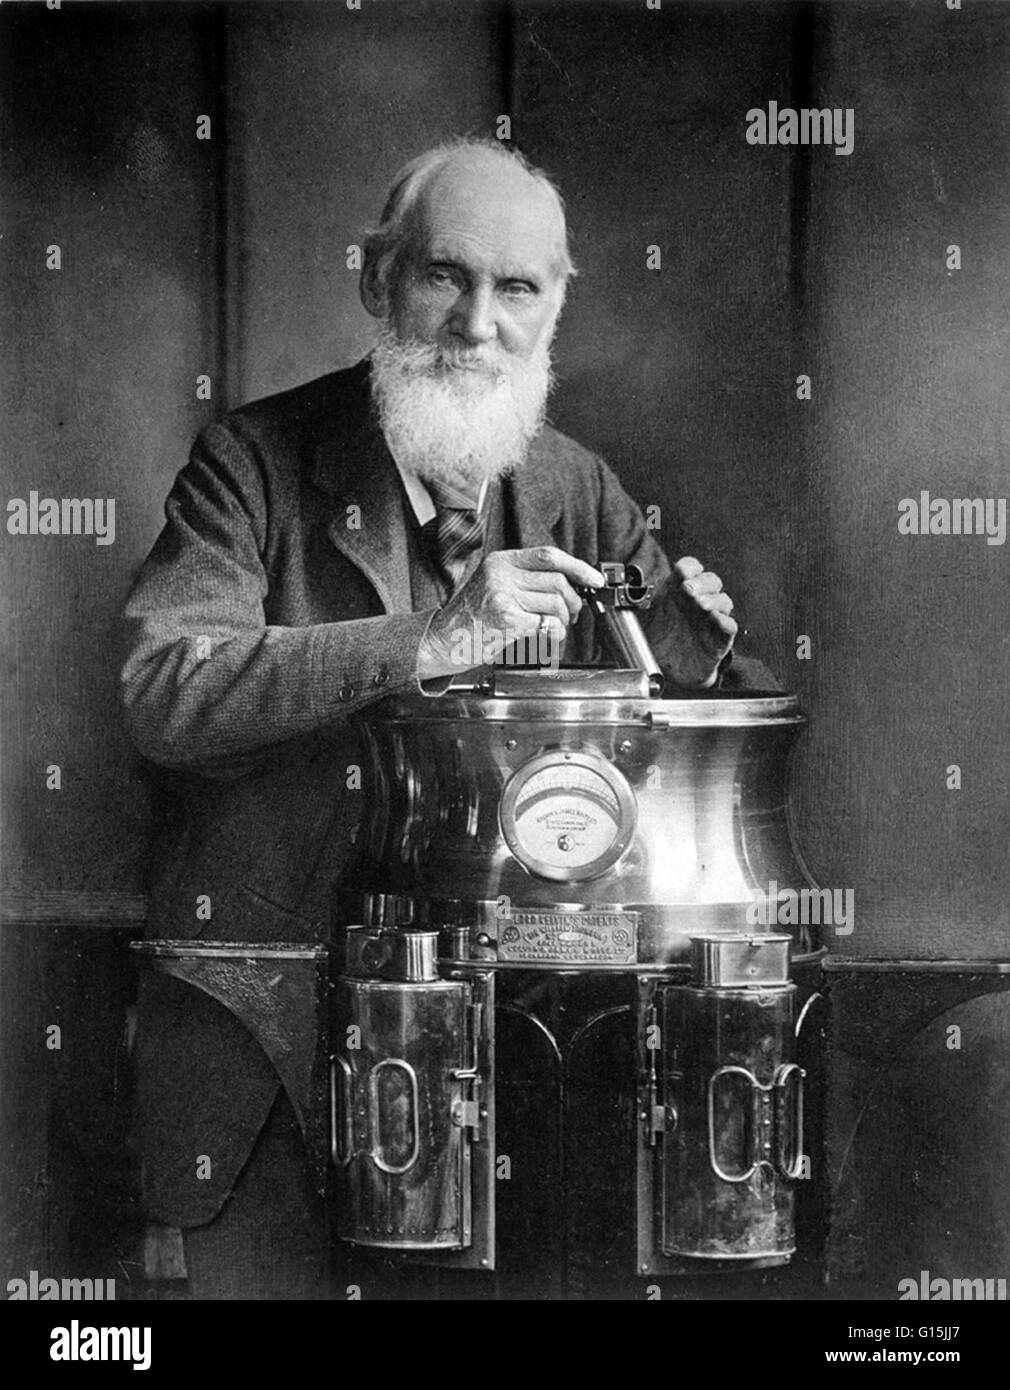 William Thomson, Lord Kelvin (26 giugno 1824 - 17 dicembre 1907) era un fisico matematico e ingegnere. Ha fatto un lavoro importante in analisi matematica di elettricità e la formulazione della prima e della seconda legge della termodinamica, e ha fatto molto per u Foto Stock